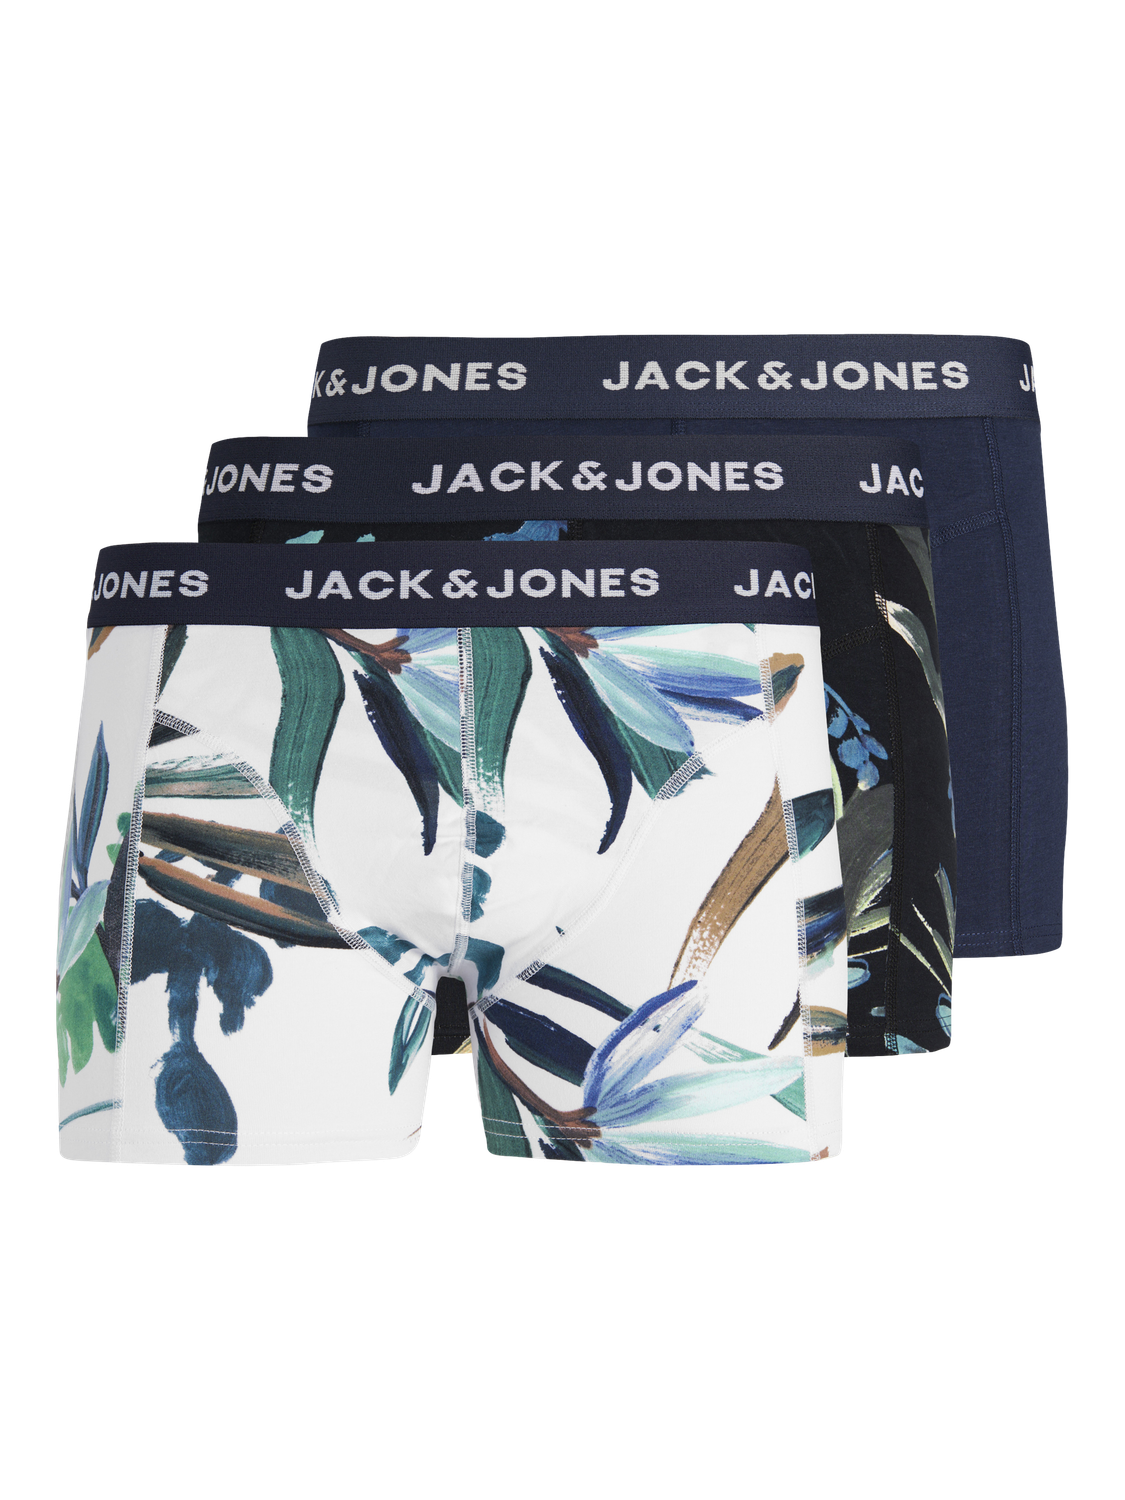 Jack & Jones Confezione da 3 Boxer Per Bambino -Navy Blazer - 12253231